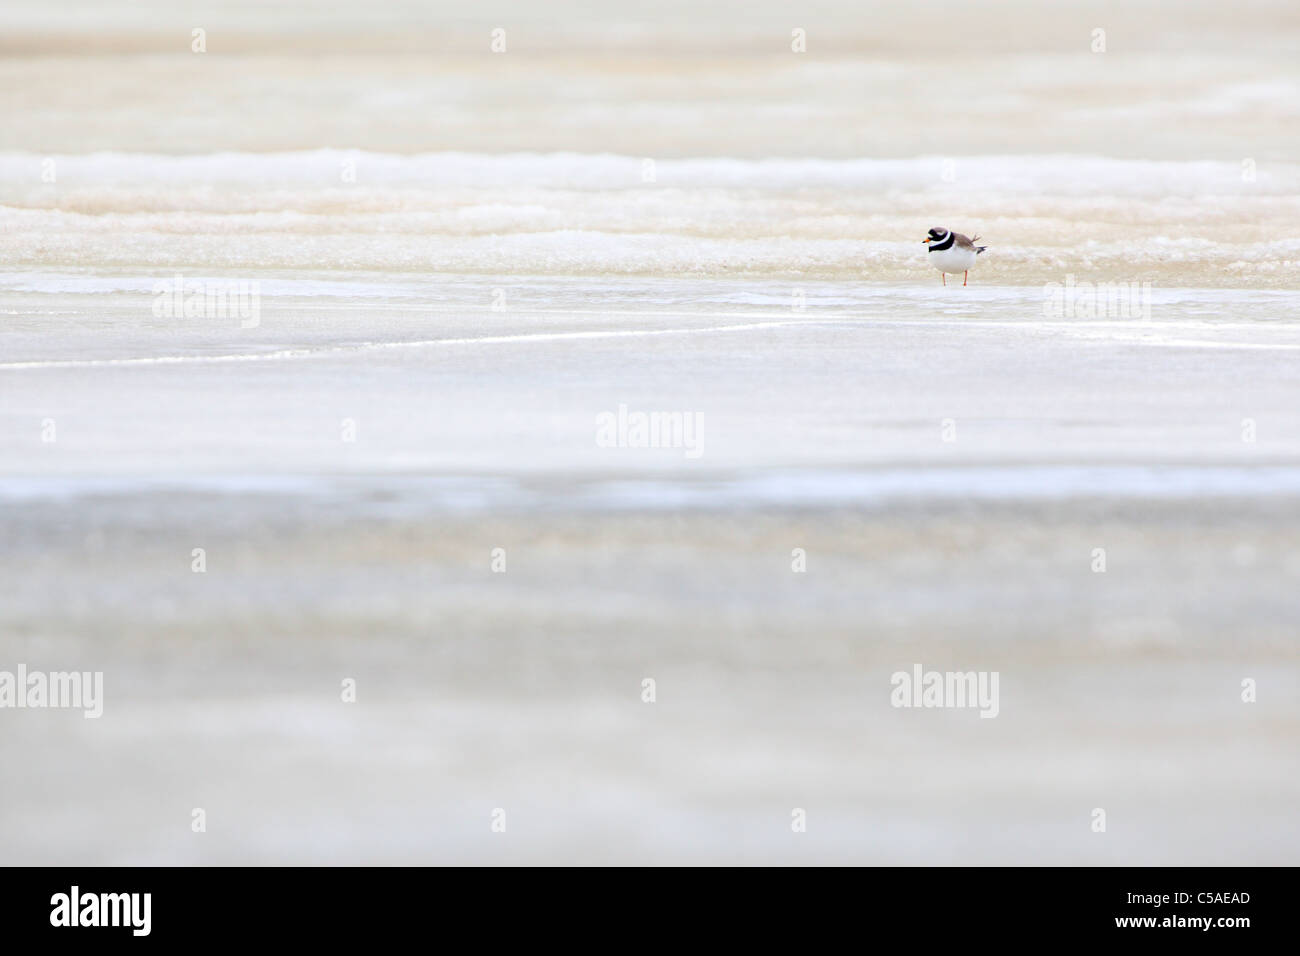 Ringed Plover (Charadrius hiaticula) debout sur la glace de mer. Avril 2011, l'Europe. Banque D'Images